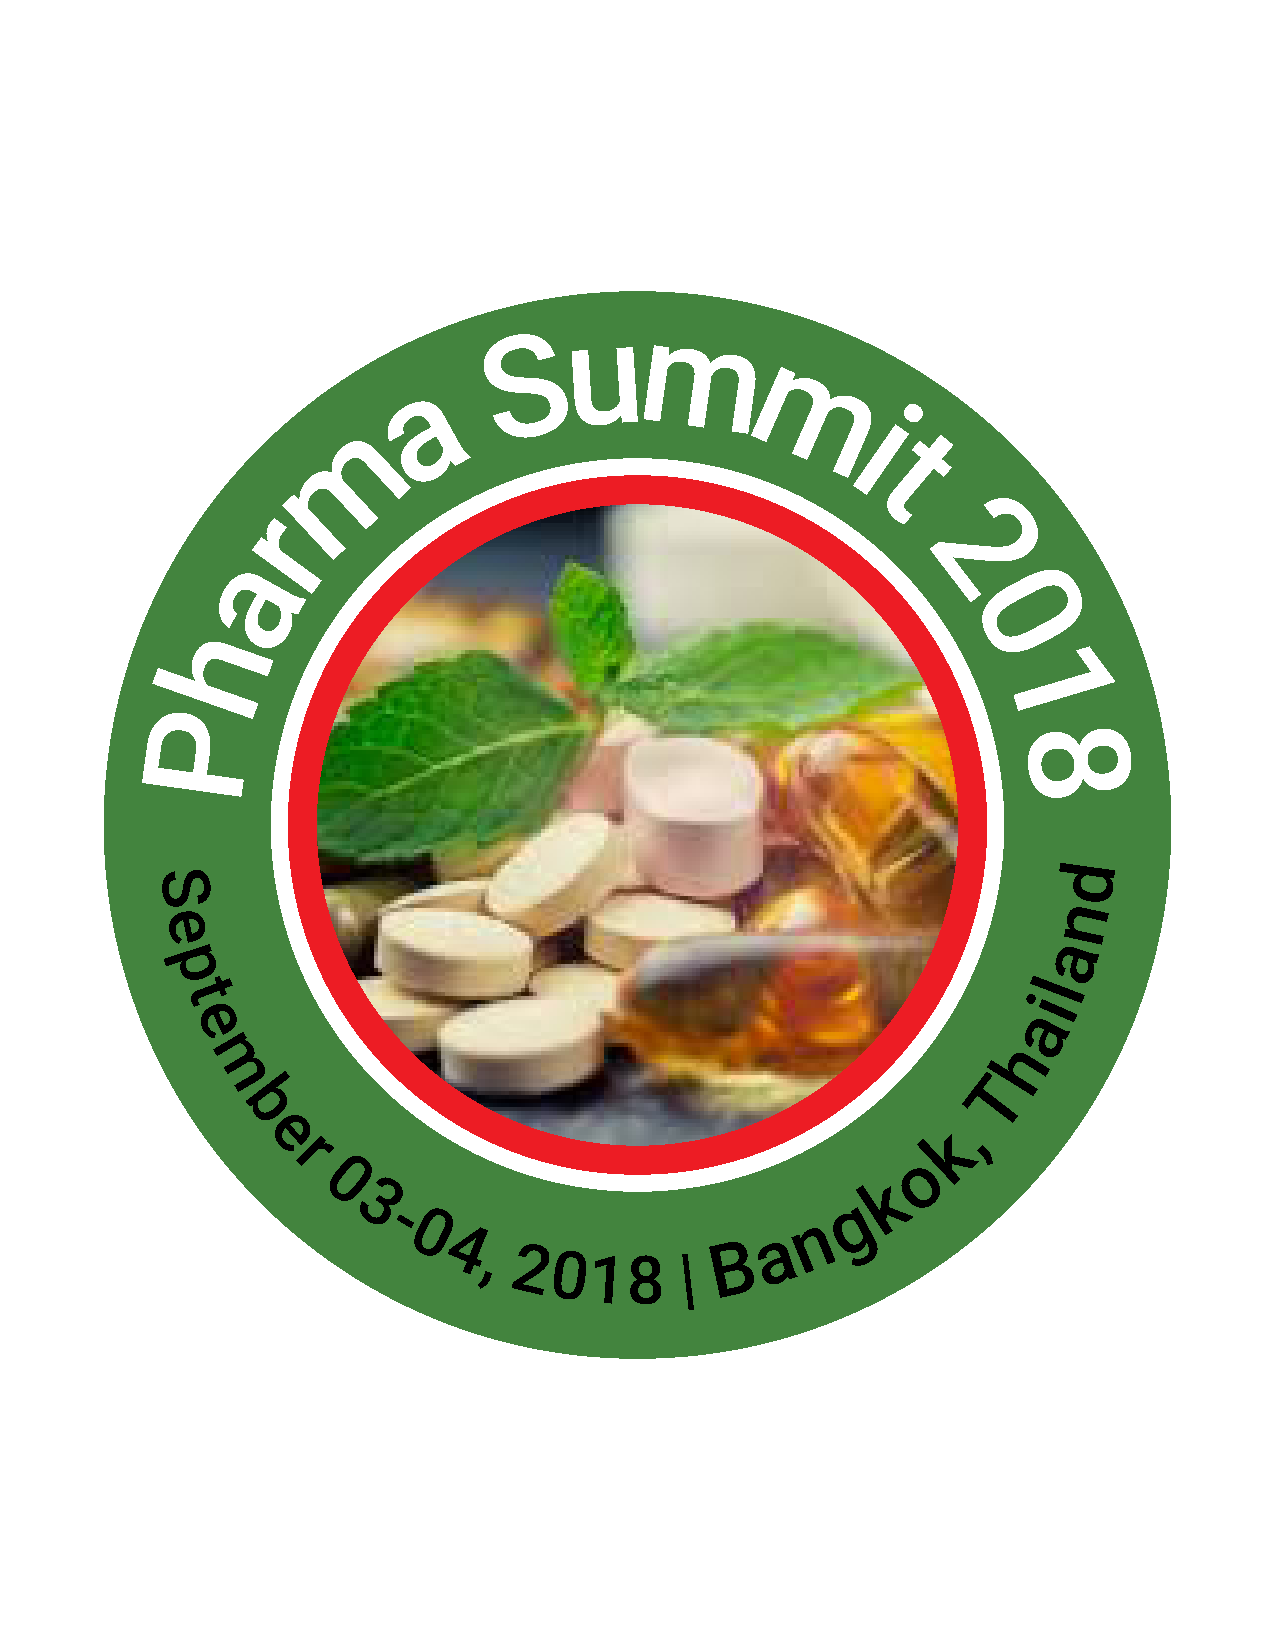 Global Pharma Summit